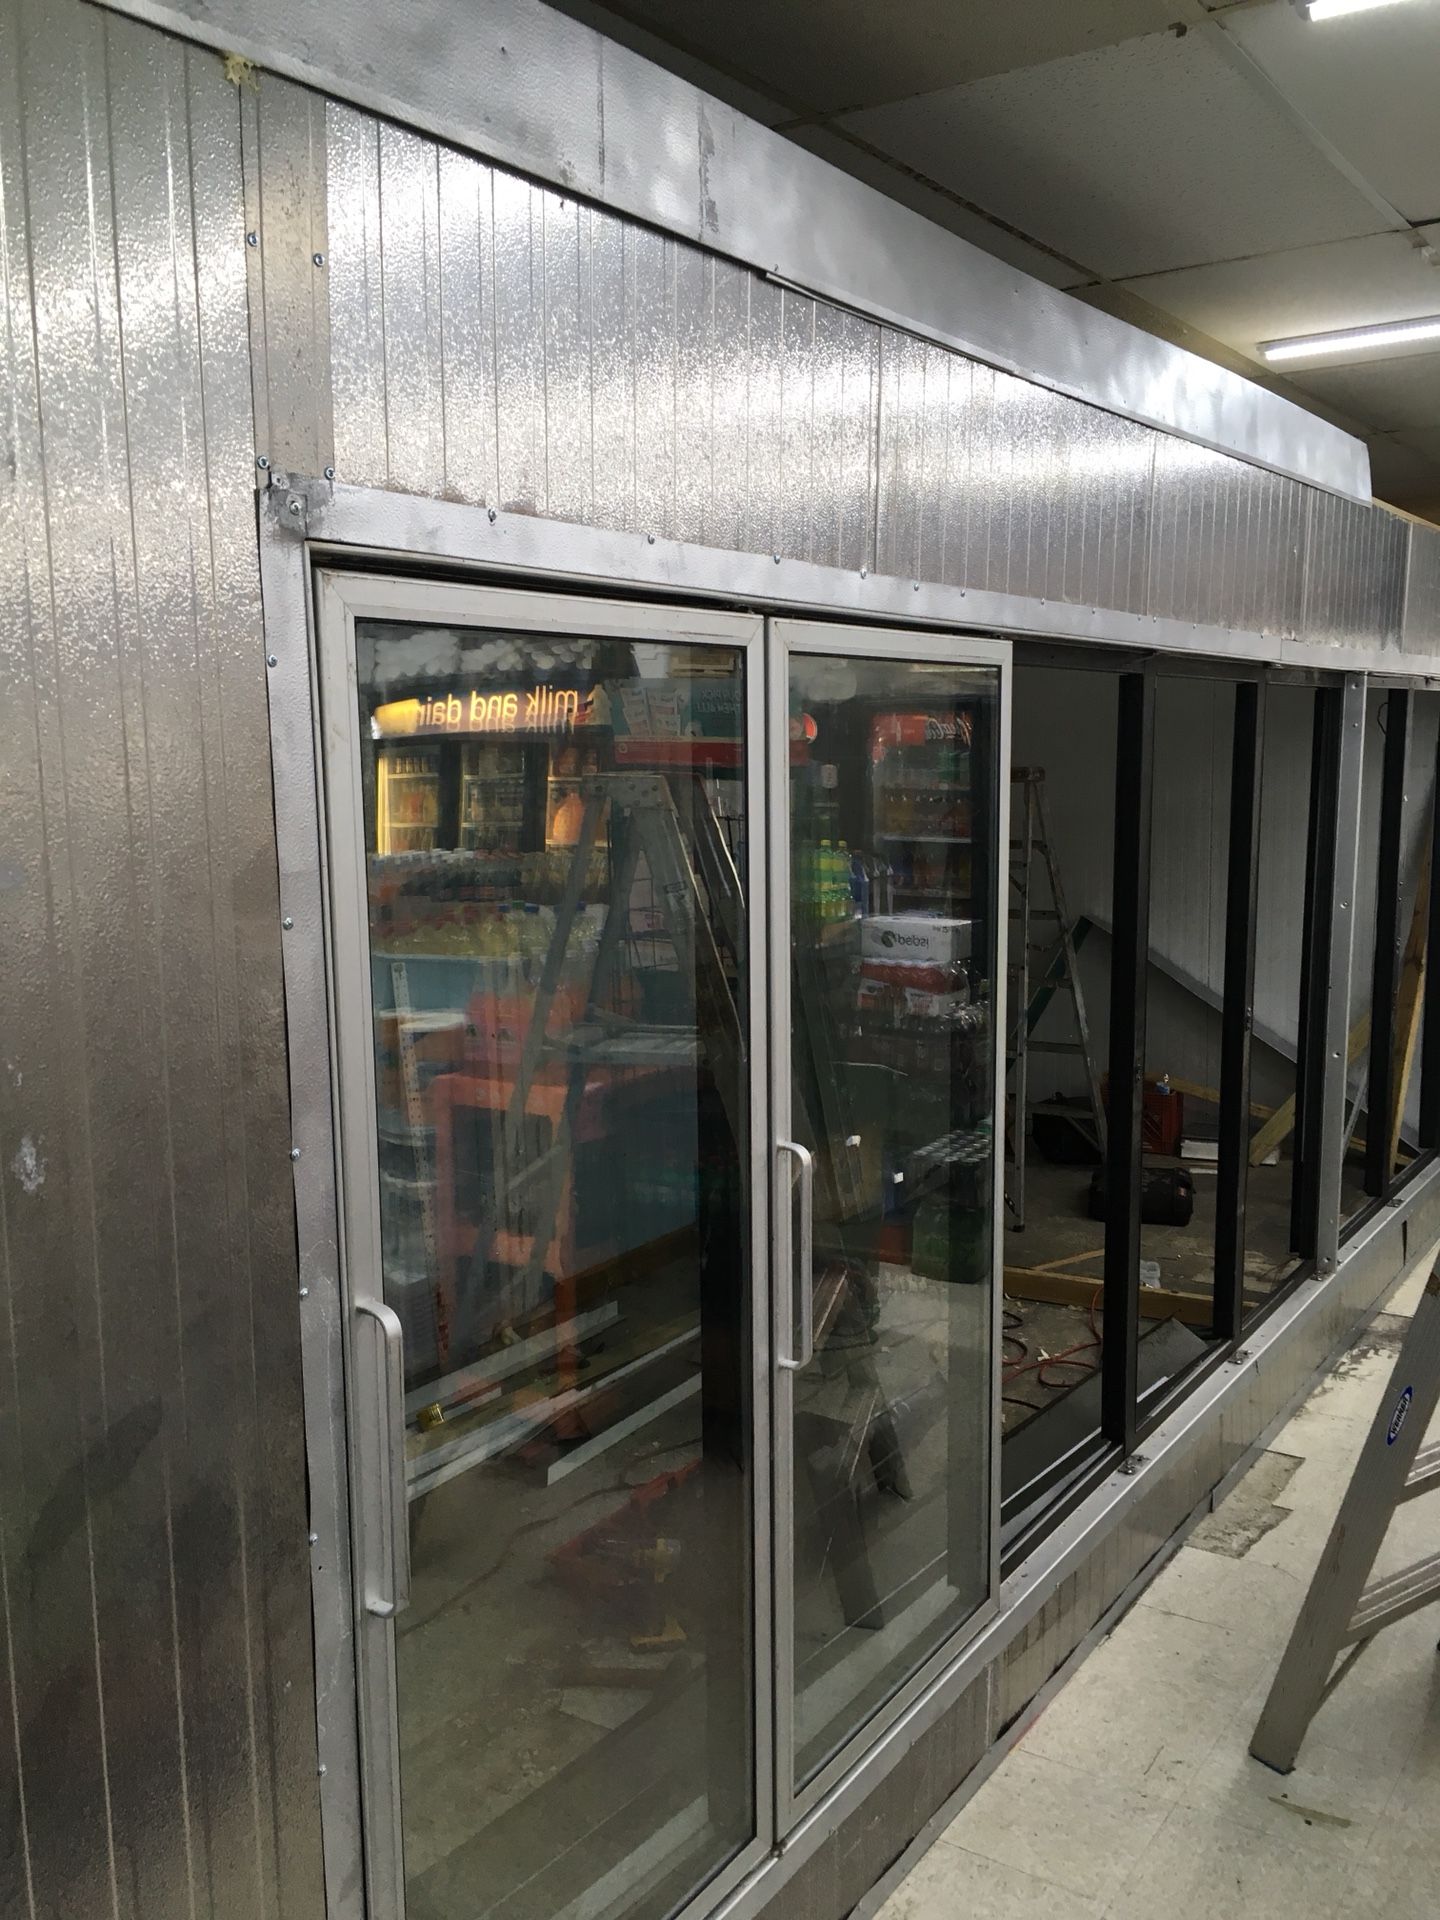 Working cooling glass door